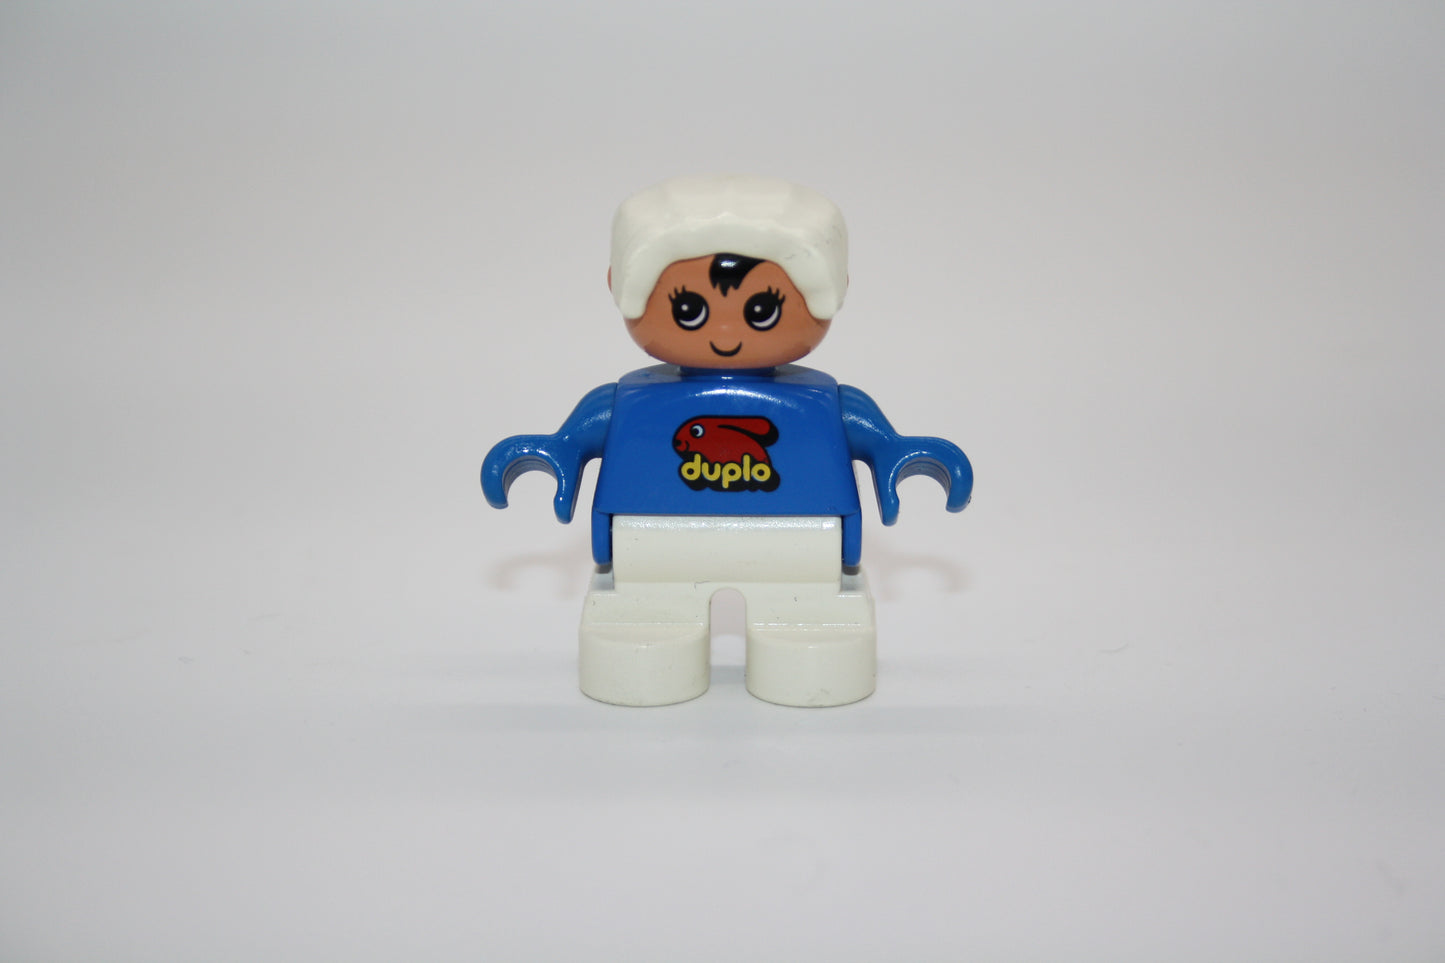 Duplo - Baby - weiße Hose/blaues Oberteil m. Duplo Hase - Figur